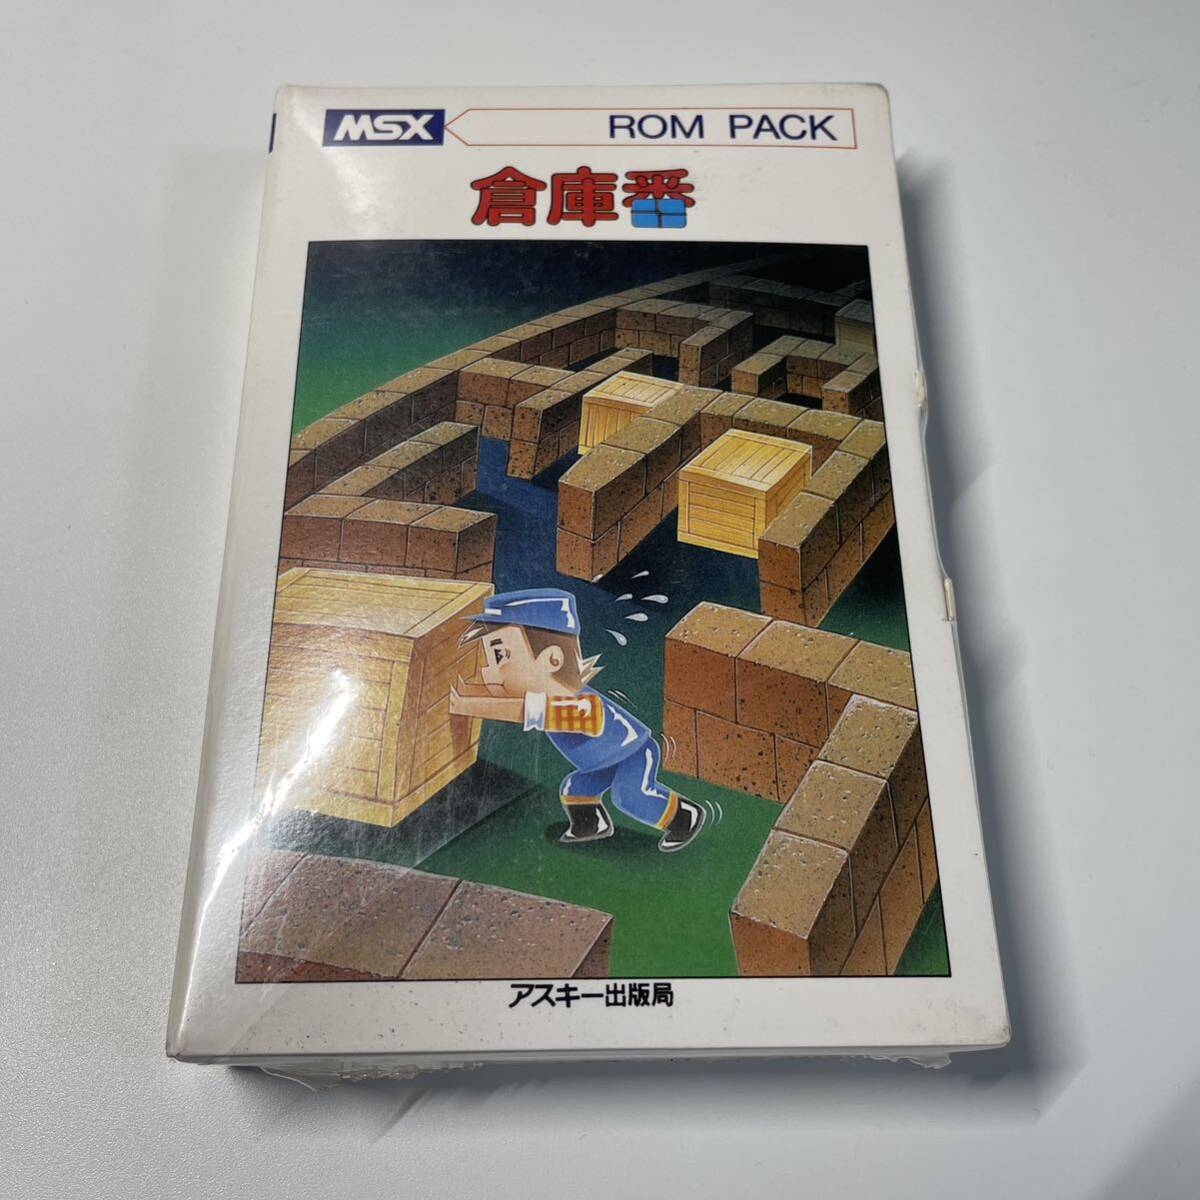  новый товар нераспечатанный MSX склад номер ROM PACK редкость ASCII выпускать отдел 